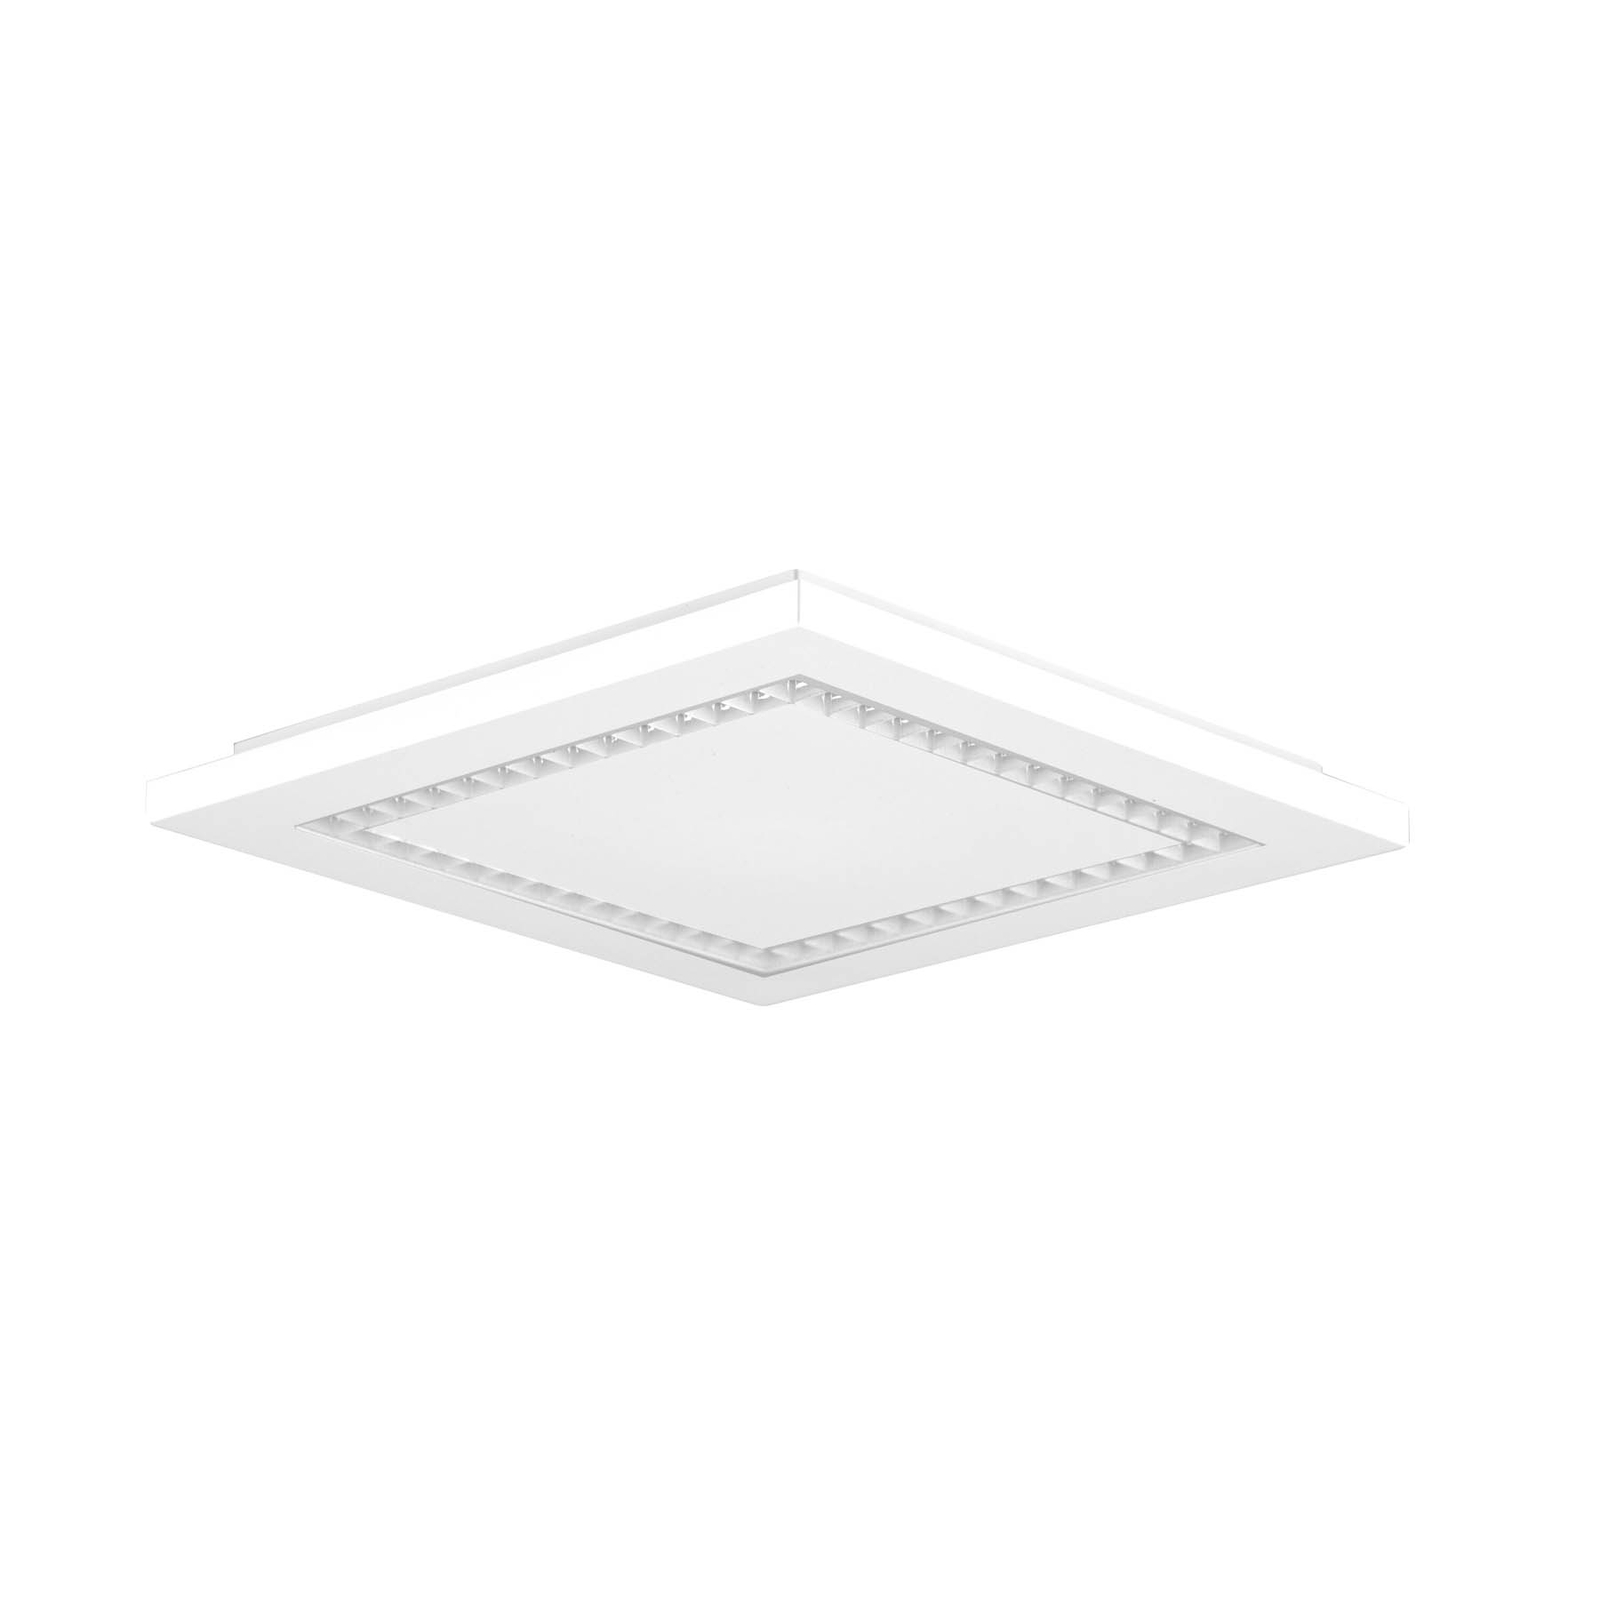 EVN ALQ pannello LED bianco 15W 30x30cm 4.000K